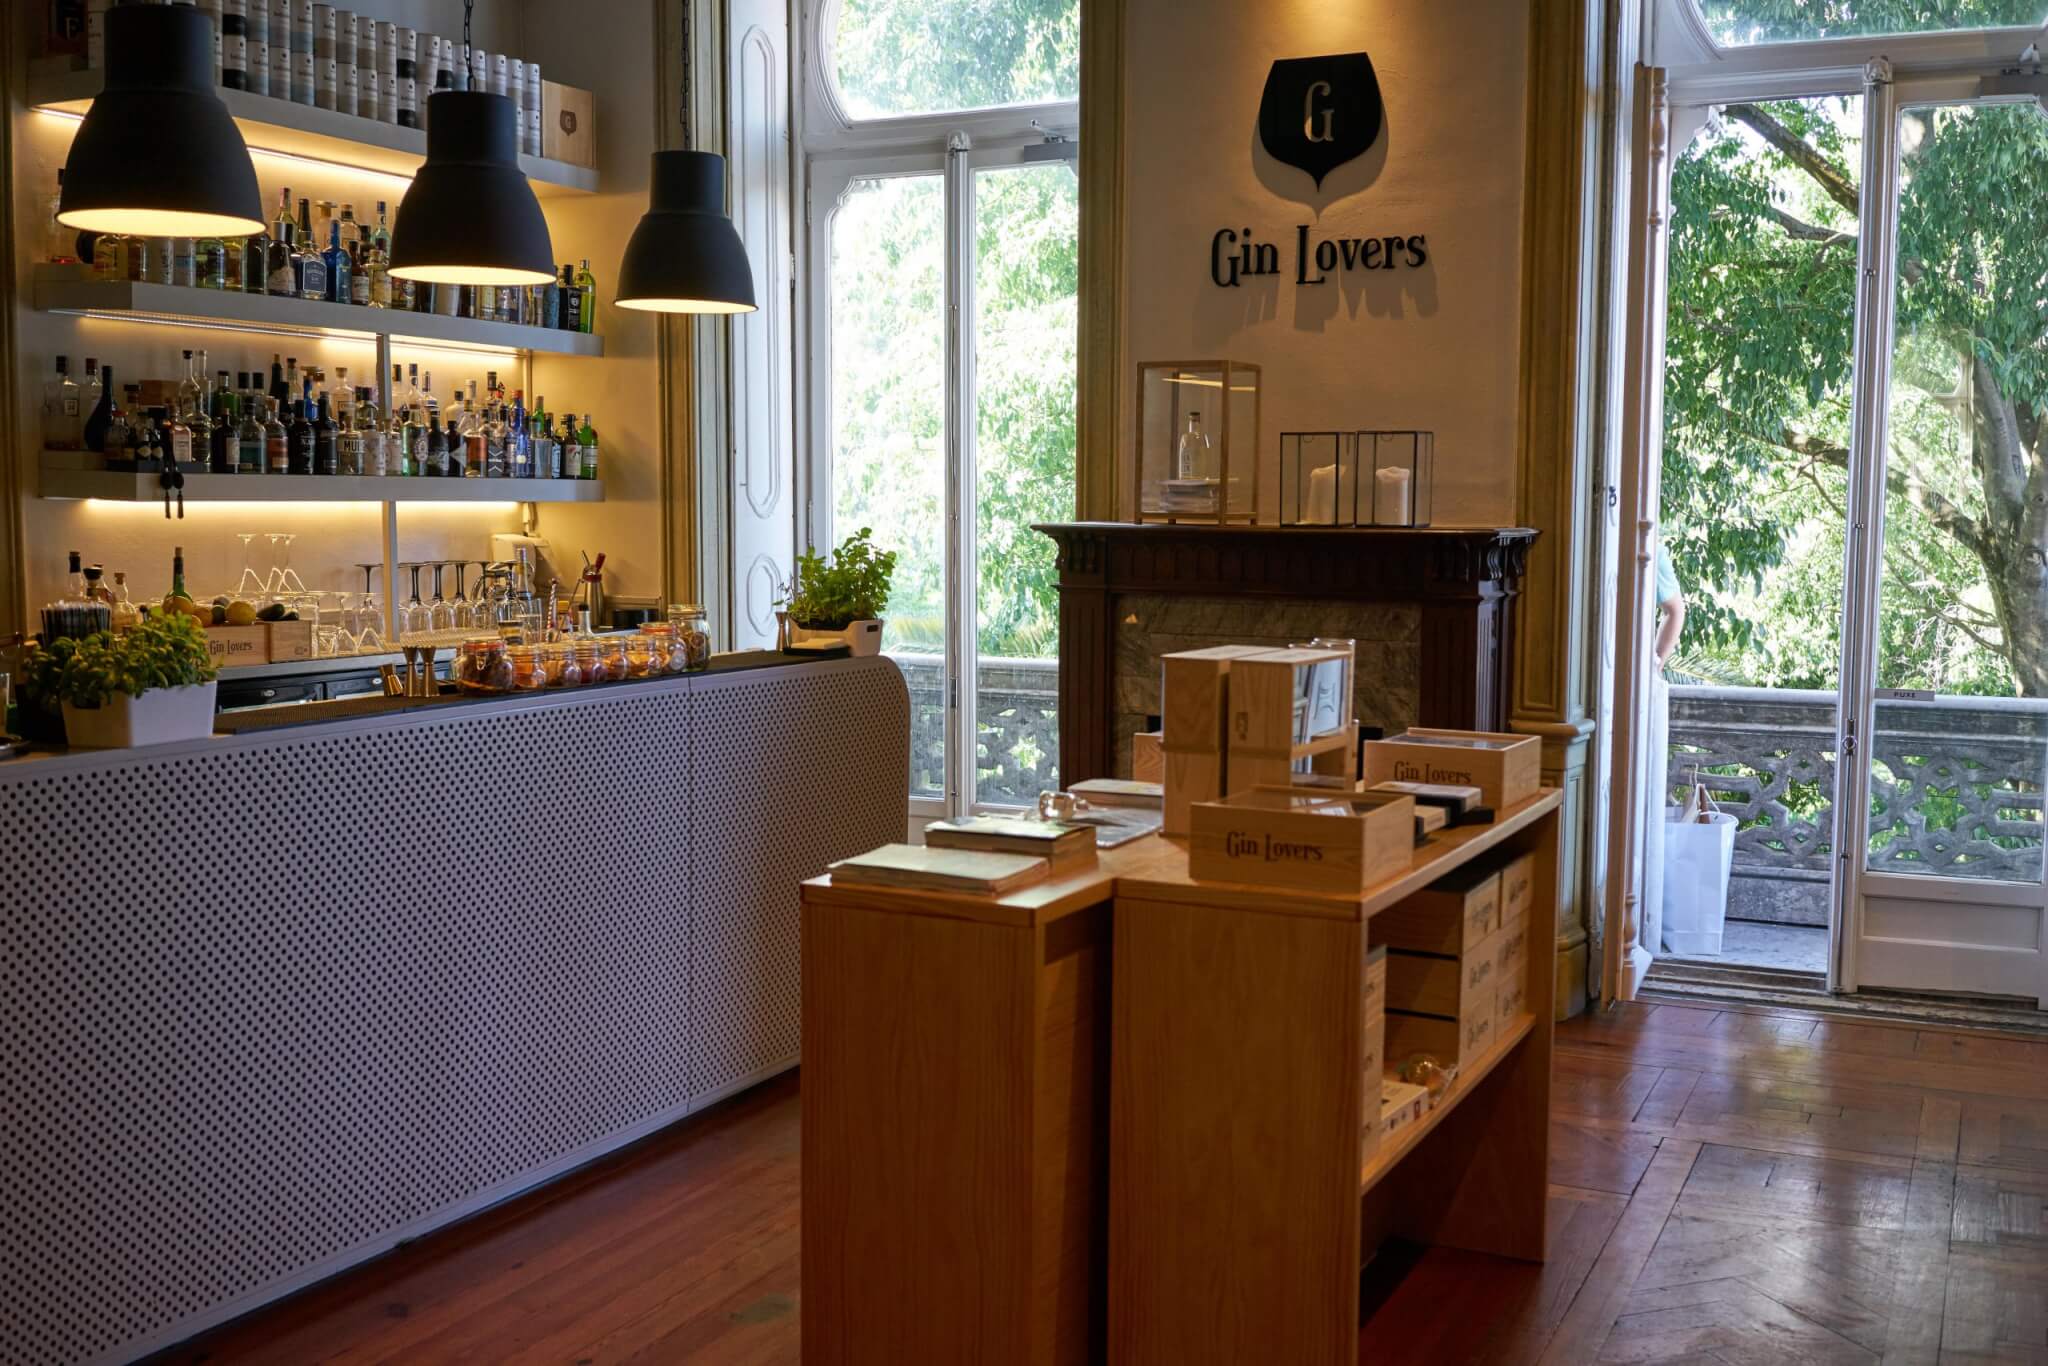 Bar "Gin Lovers" at Embaixada Concept Store